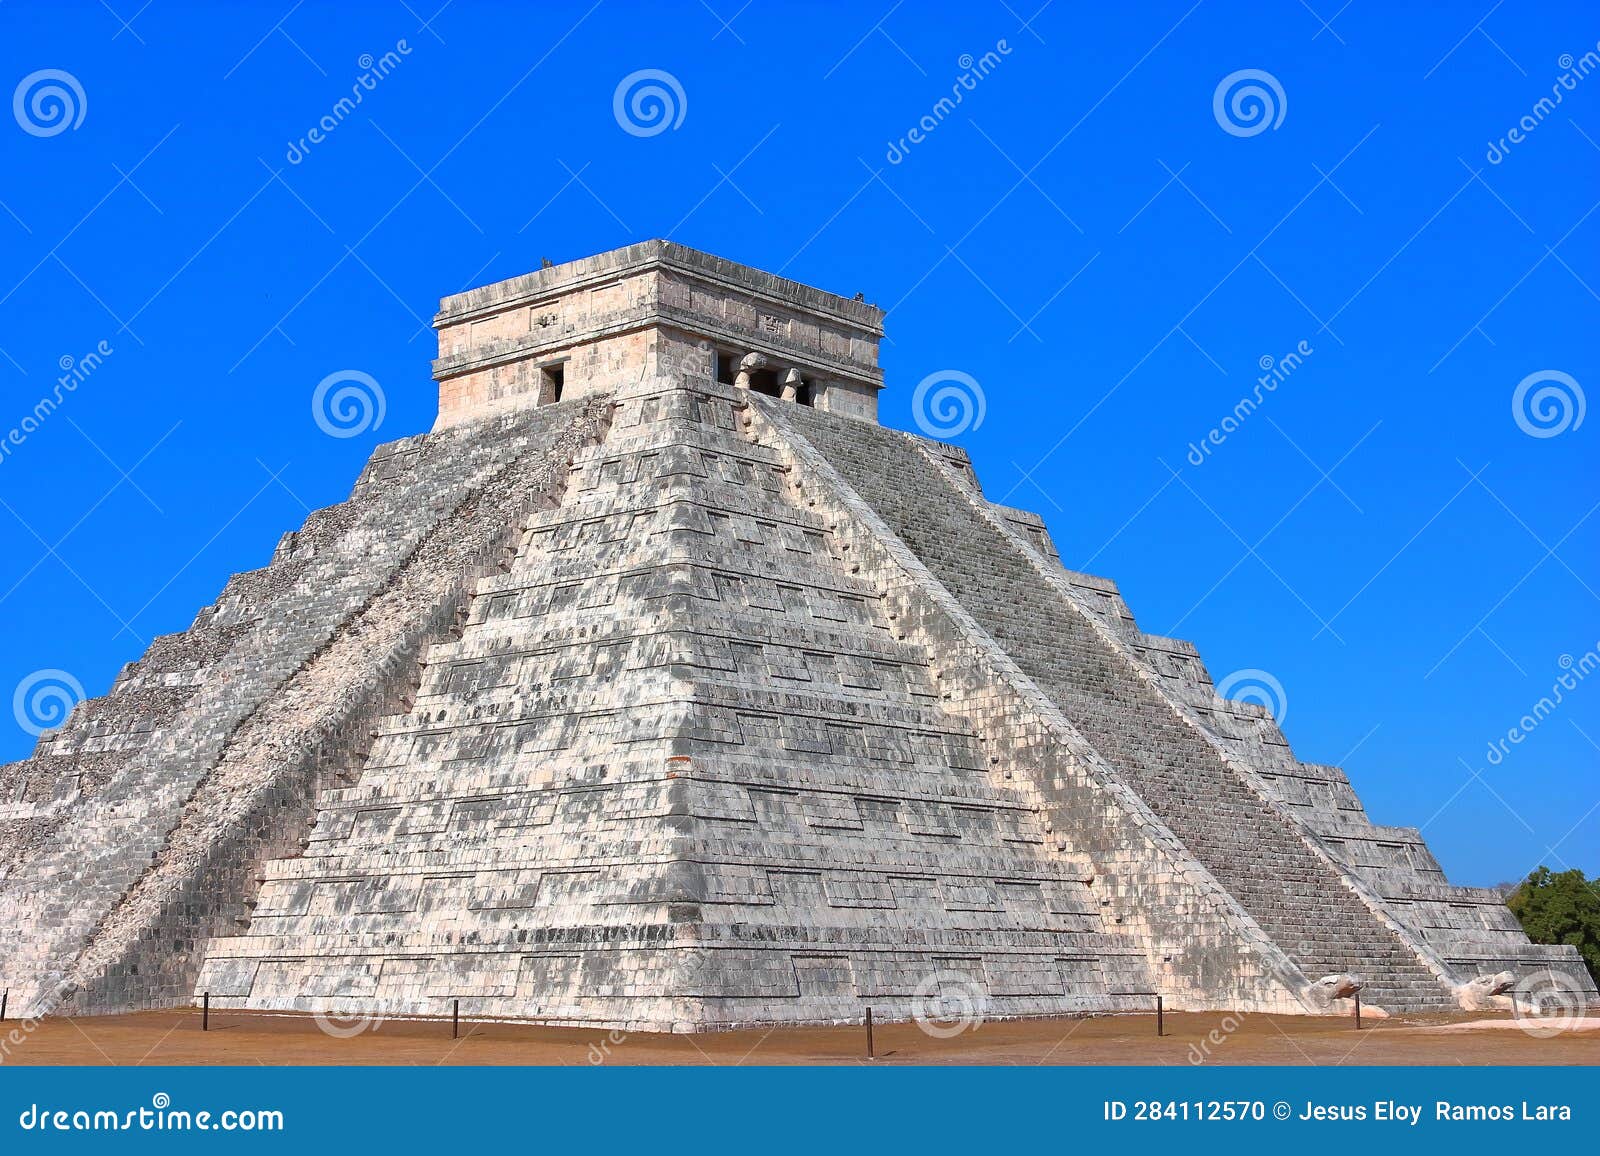 kukulcan temple in chichenitza, yucatan, mexico v